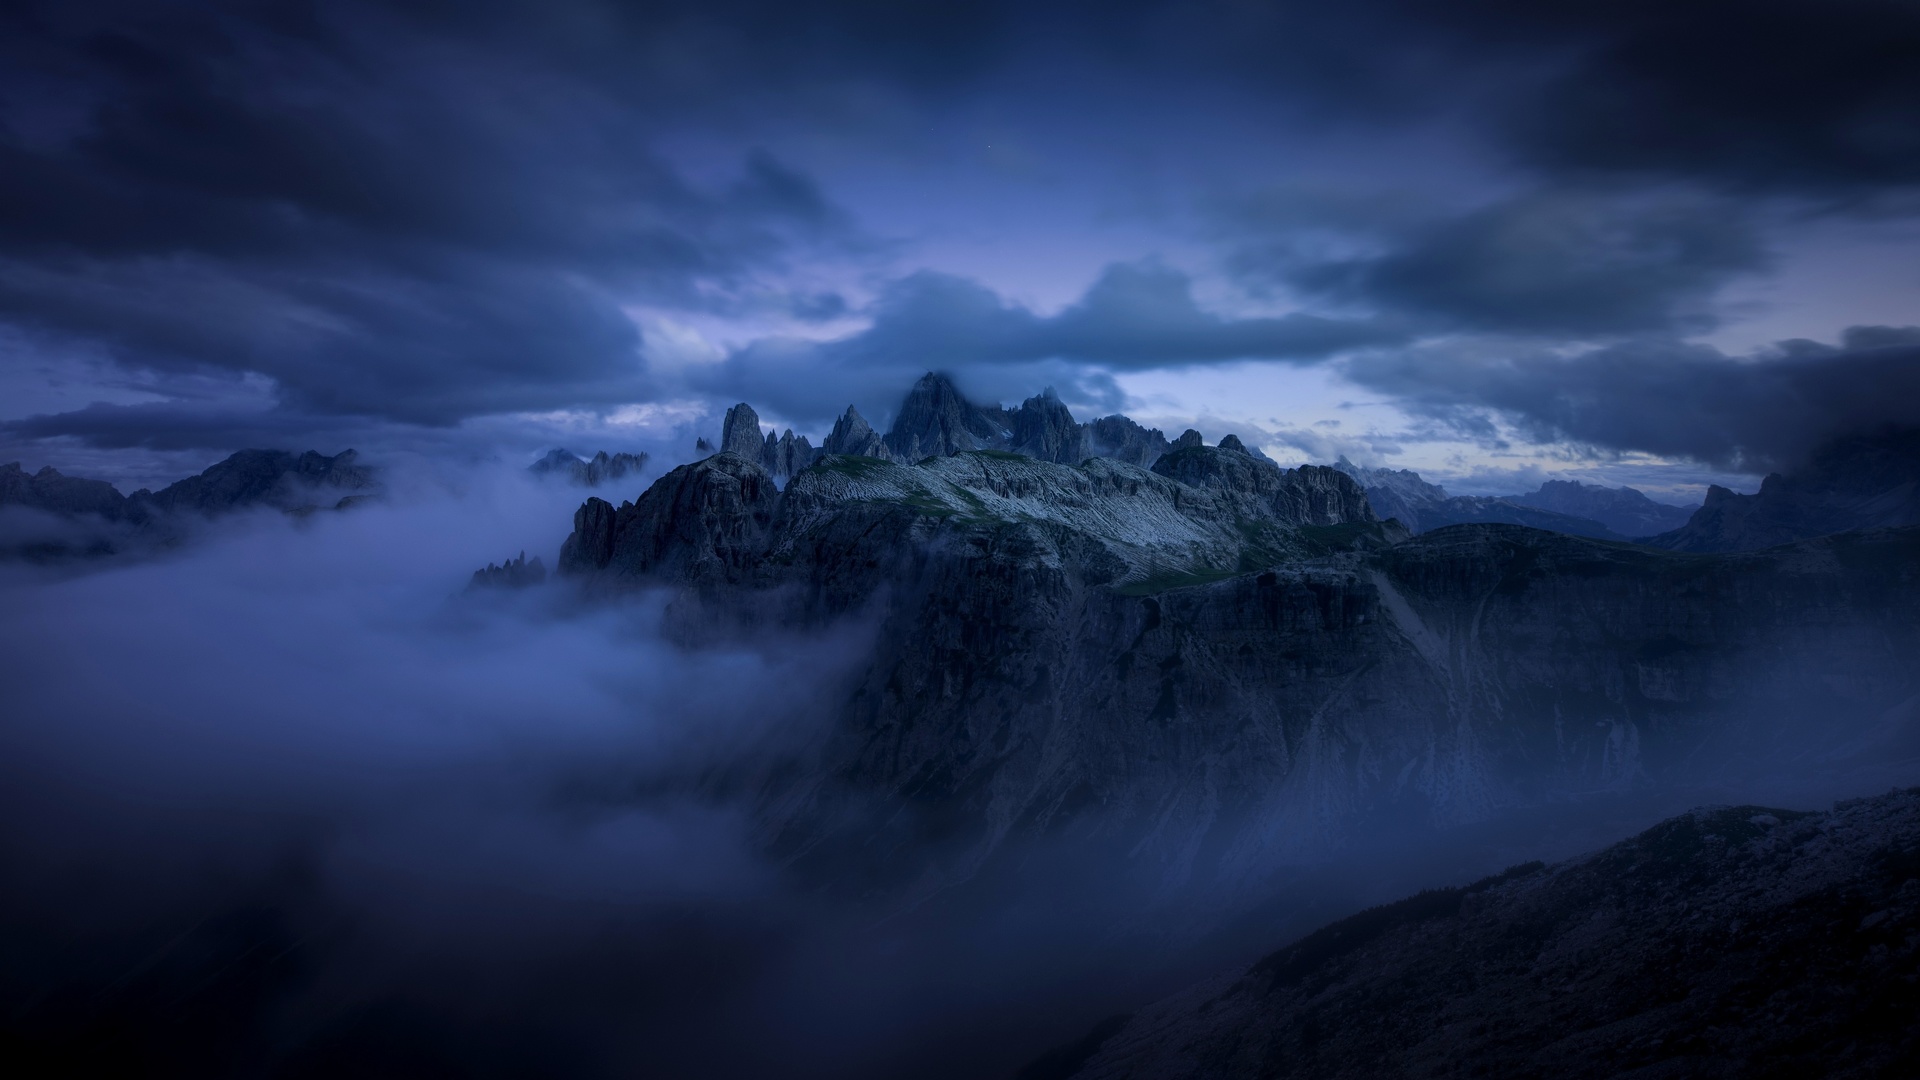 Nuit tombe dans les montagnes - Magnifique fond d'écran.jpg